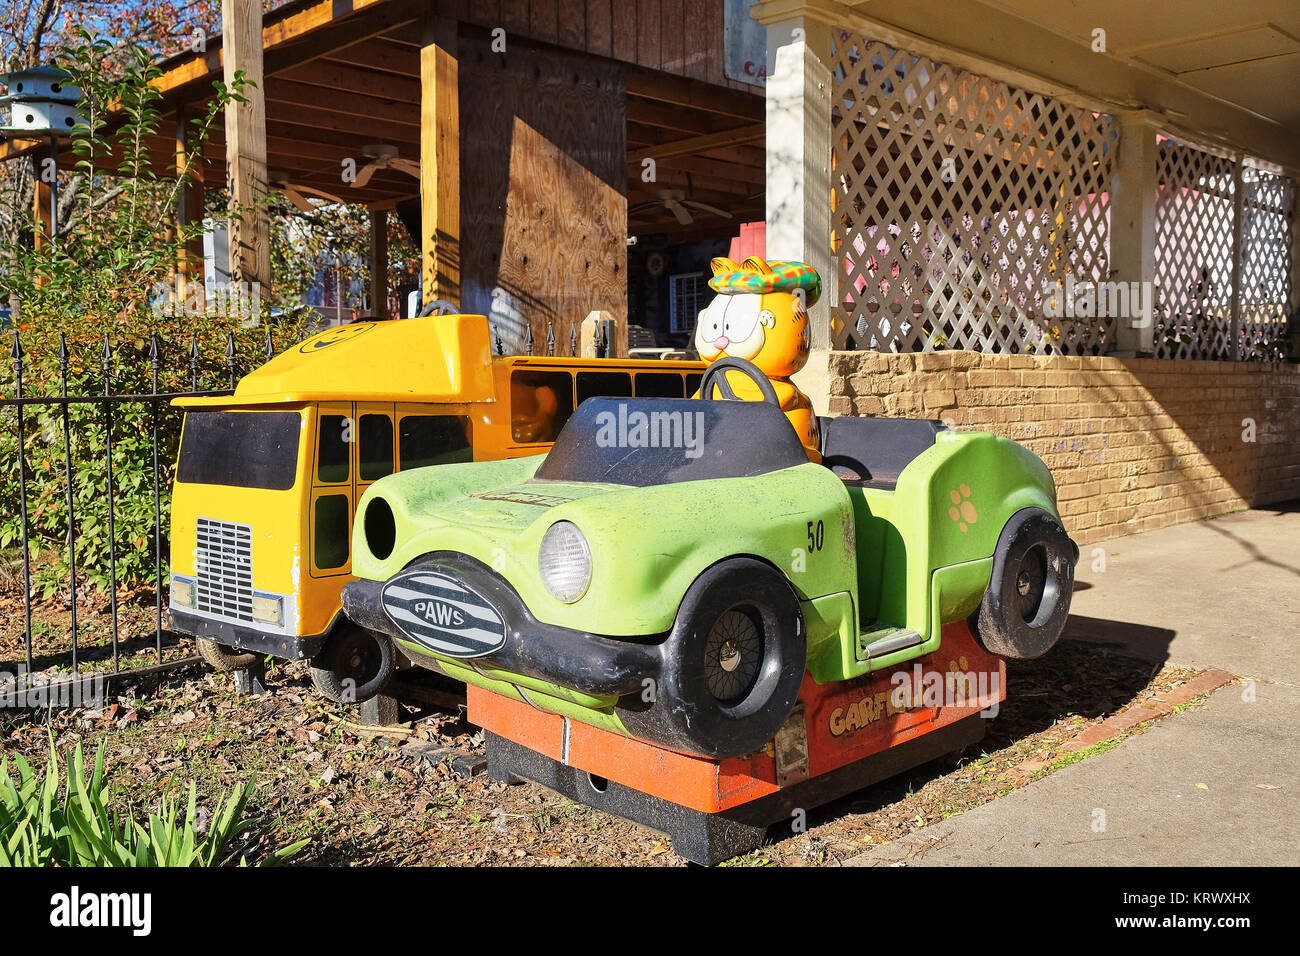 Enfants jetés vieux manèges, Garfield voiture et un camion à incendie jaune, asseyez-vous abandonné derrière des entreprises dans une ville de Géorgie rurale, aux États-Unis. Banque D'Images